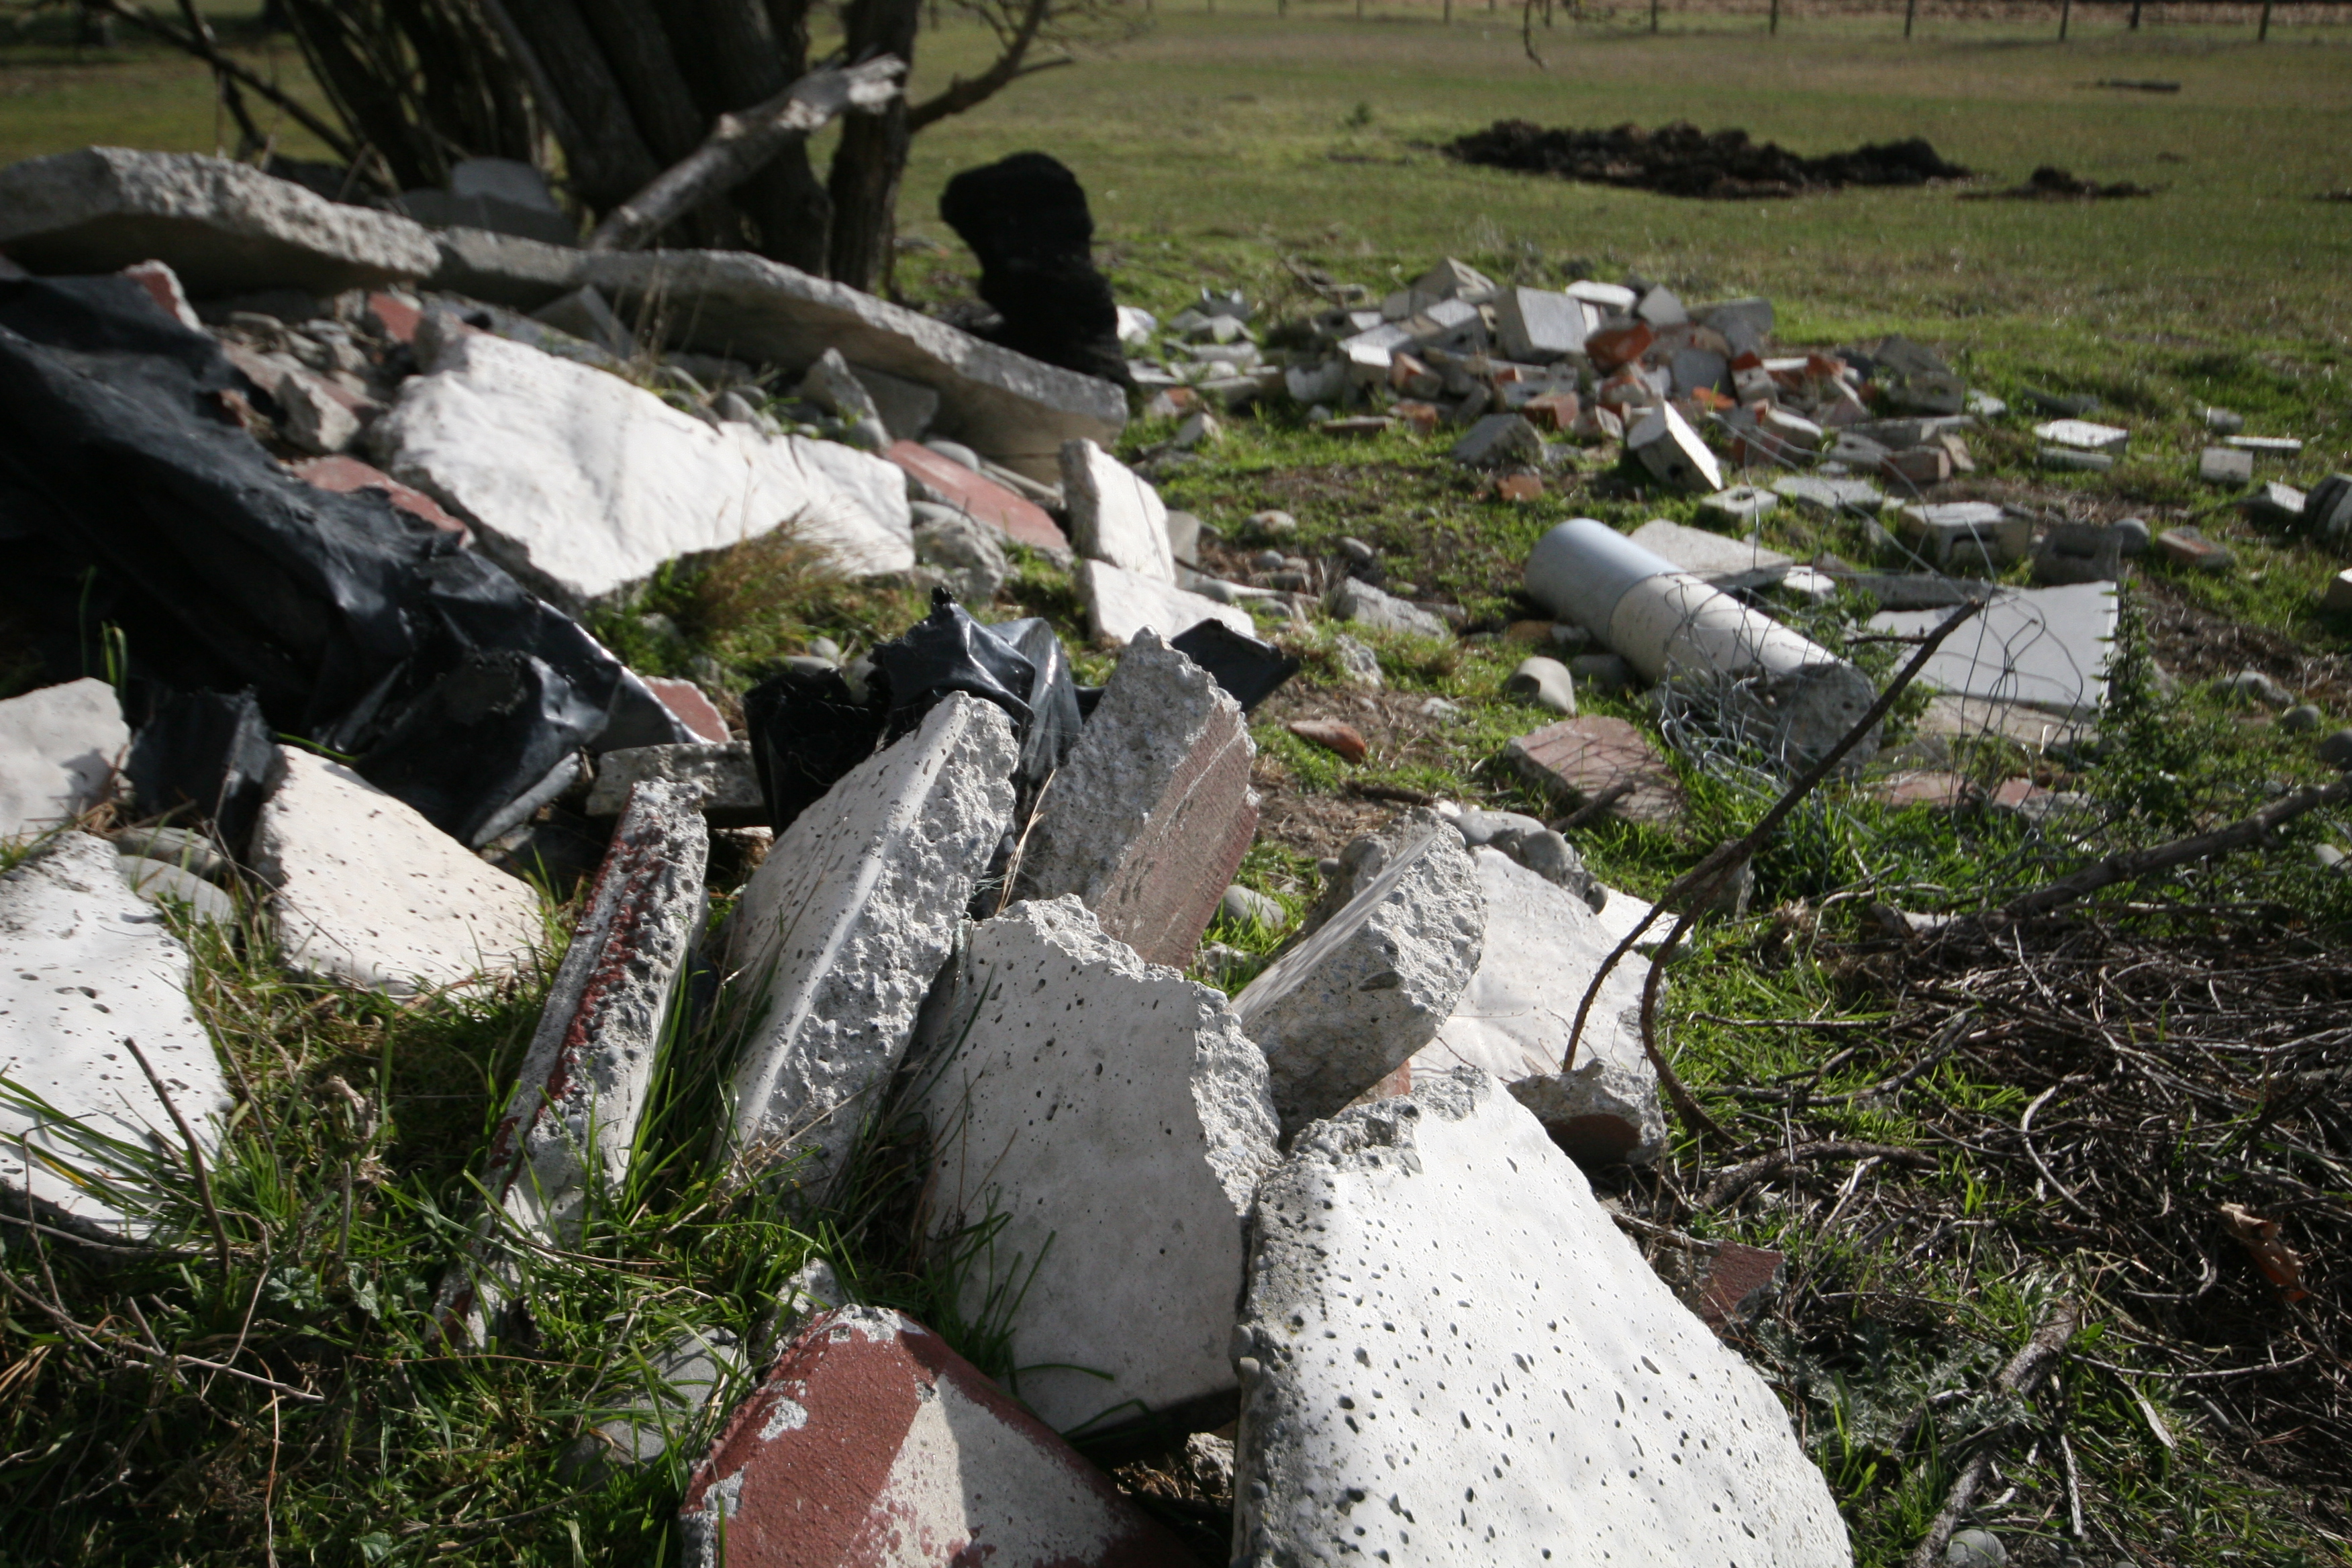 rubble dumped in a field